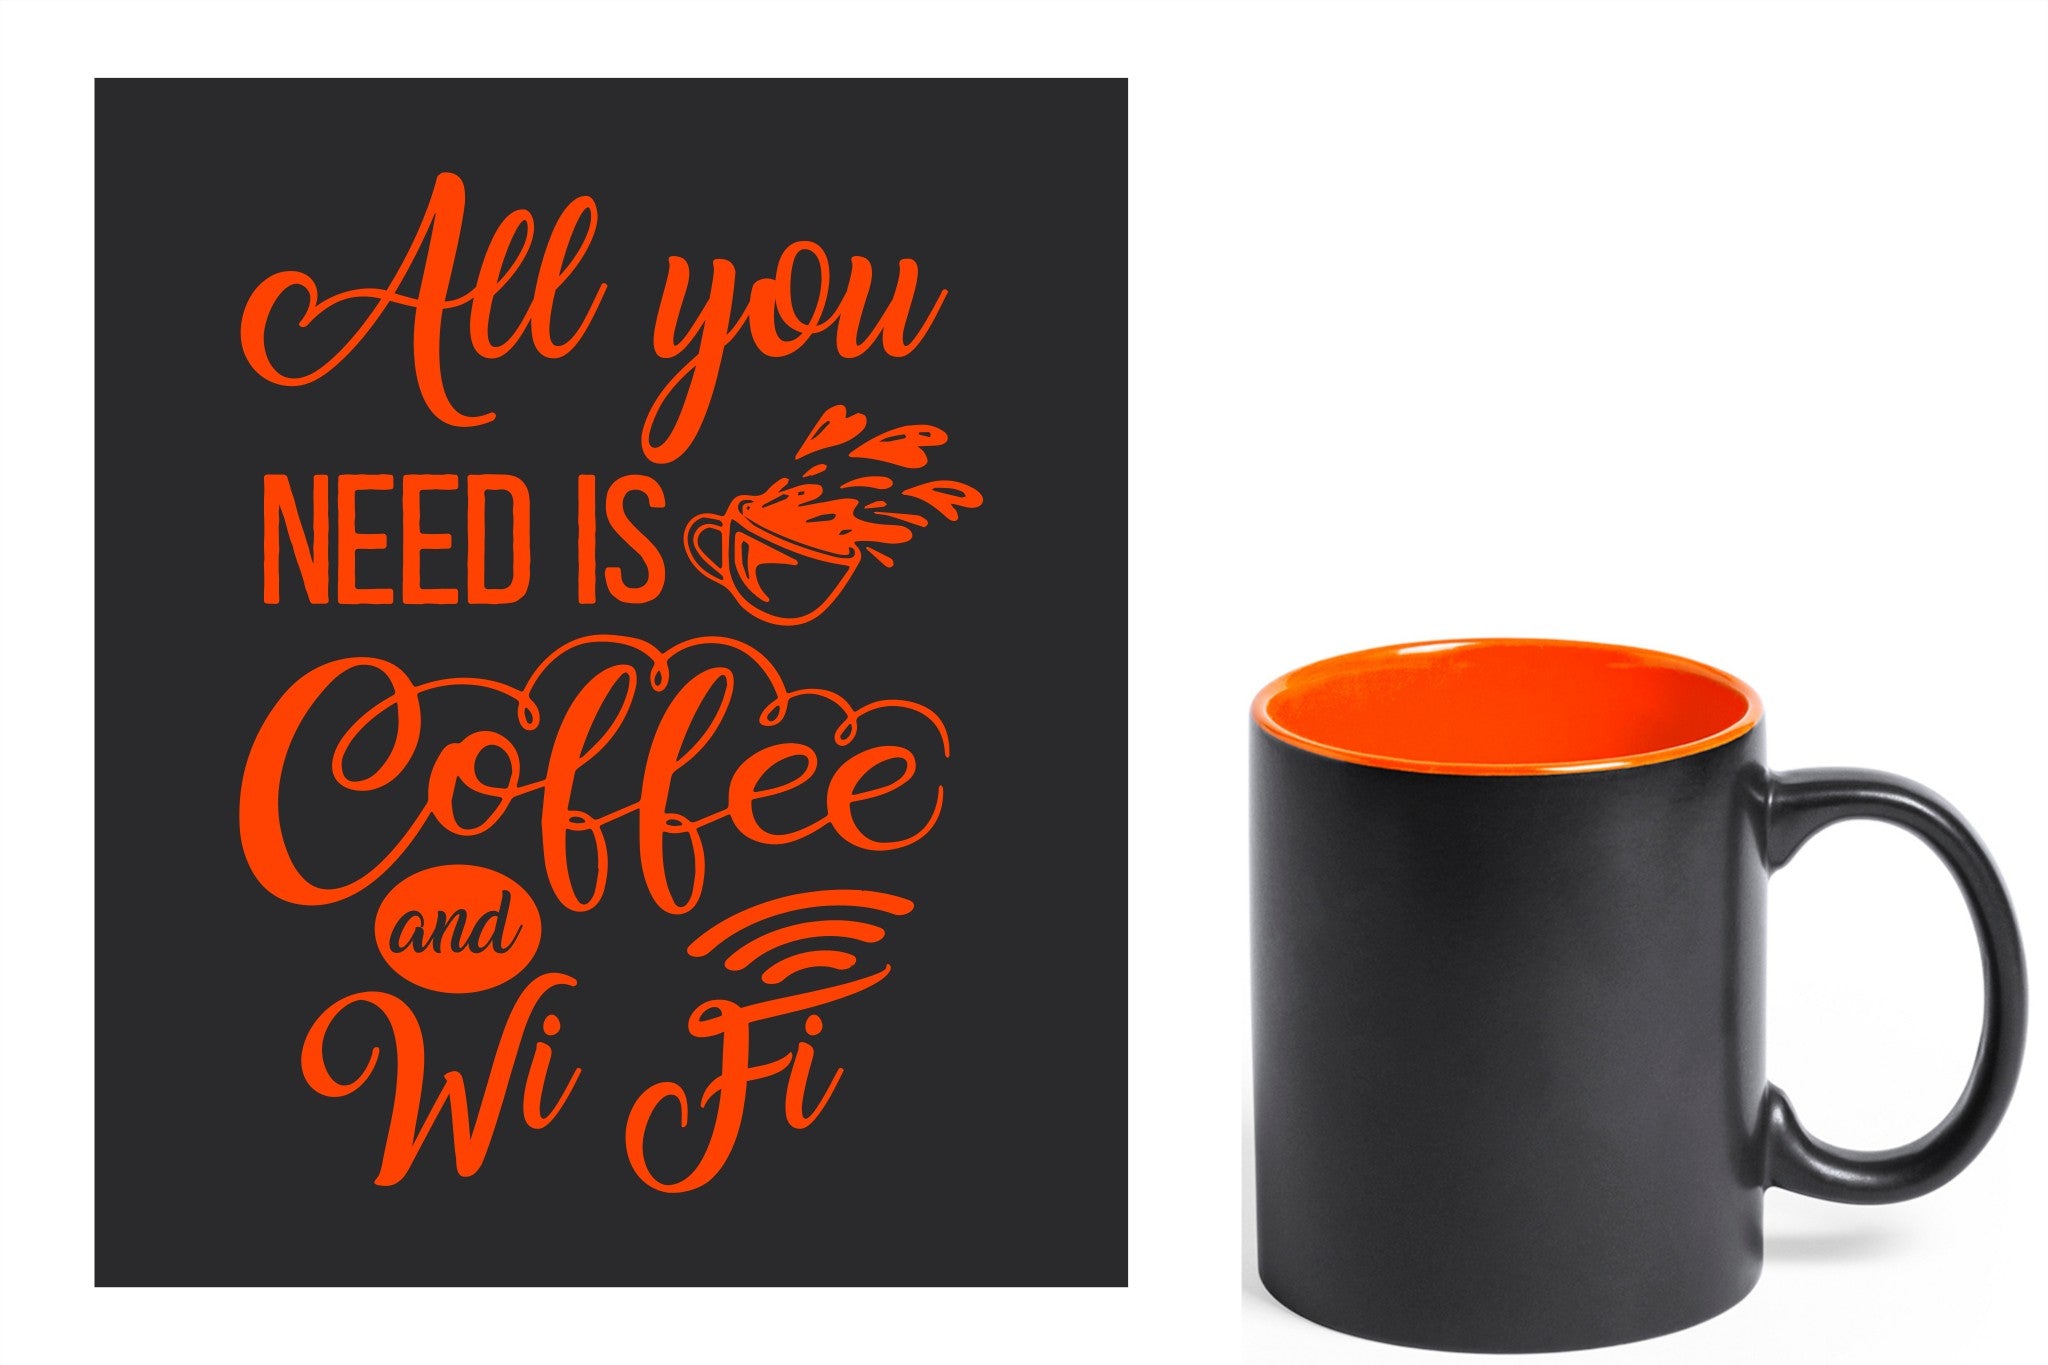 zwarte keramische mok met oranje gravure  'All you need is coffee and wifi'.